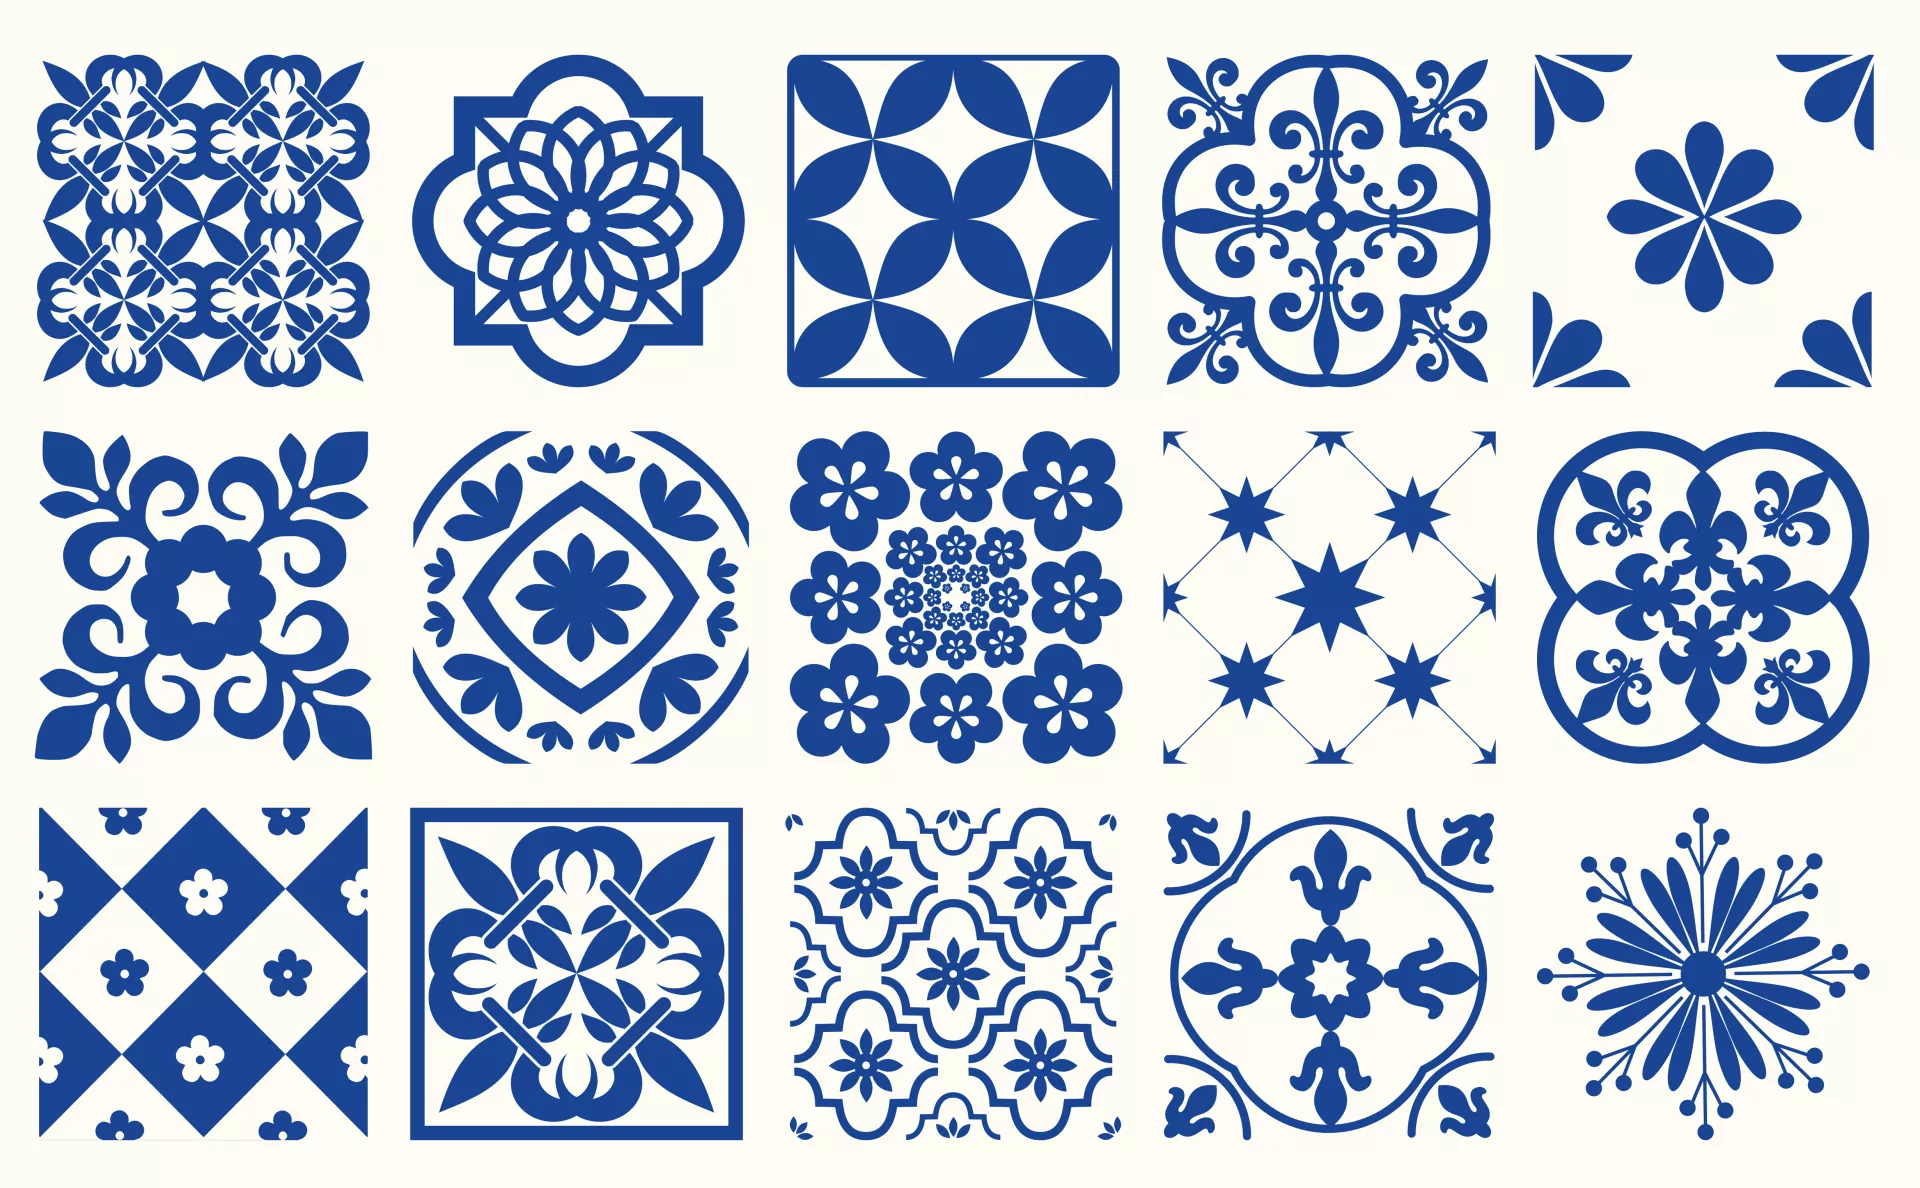 Stenciled Tile Patterns